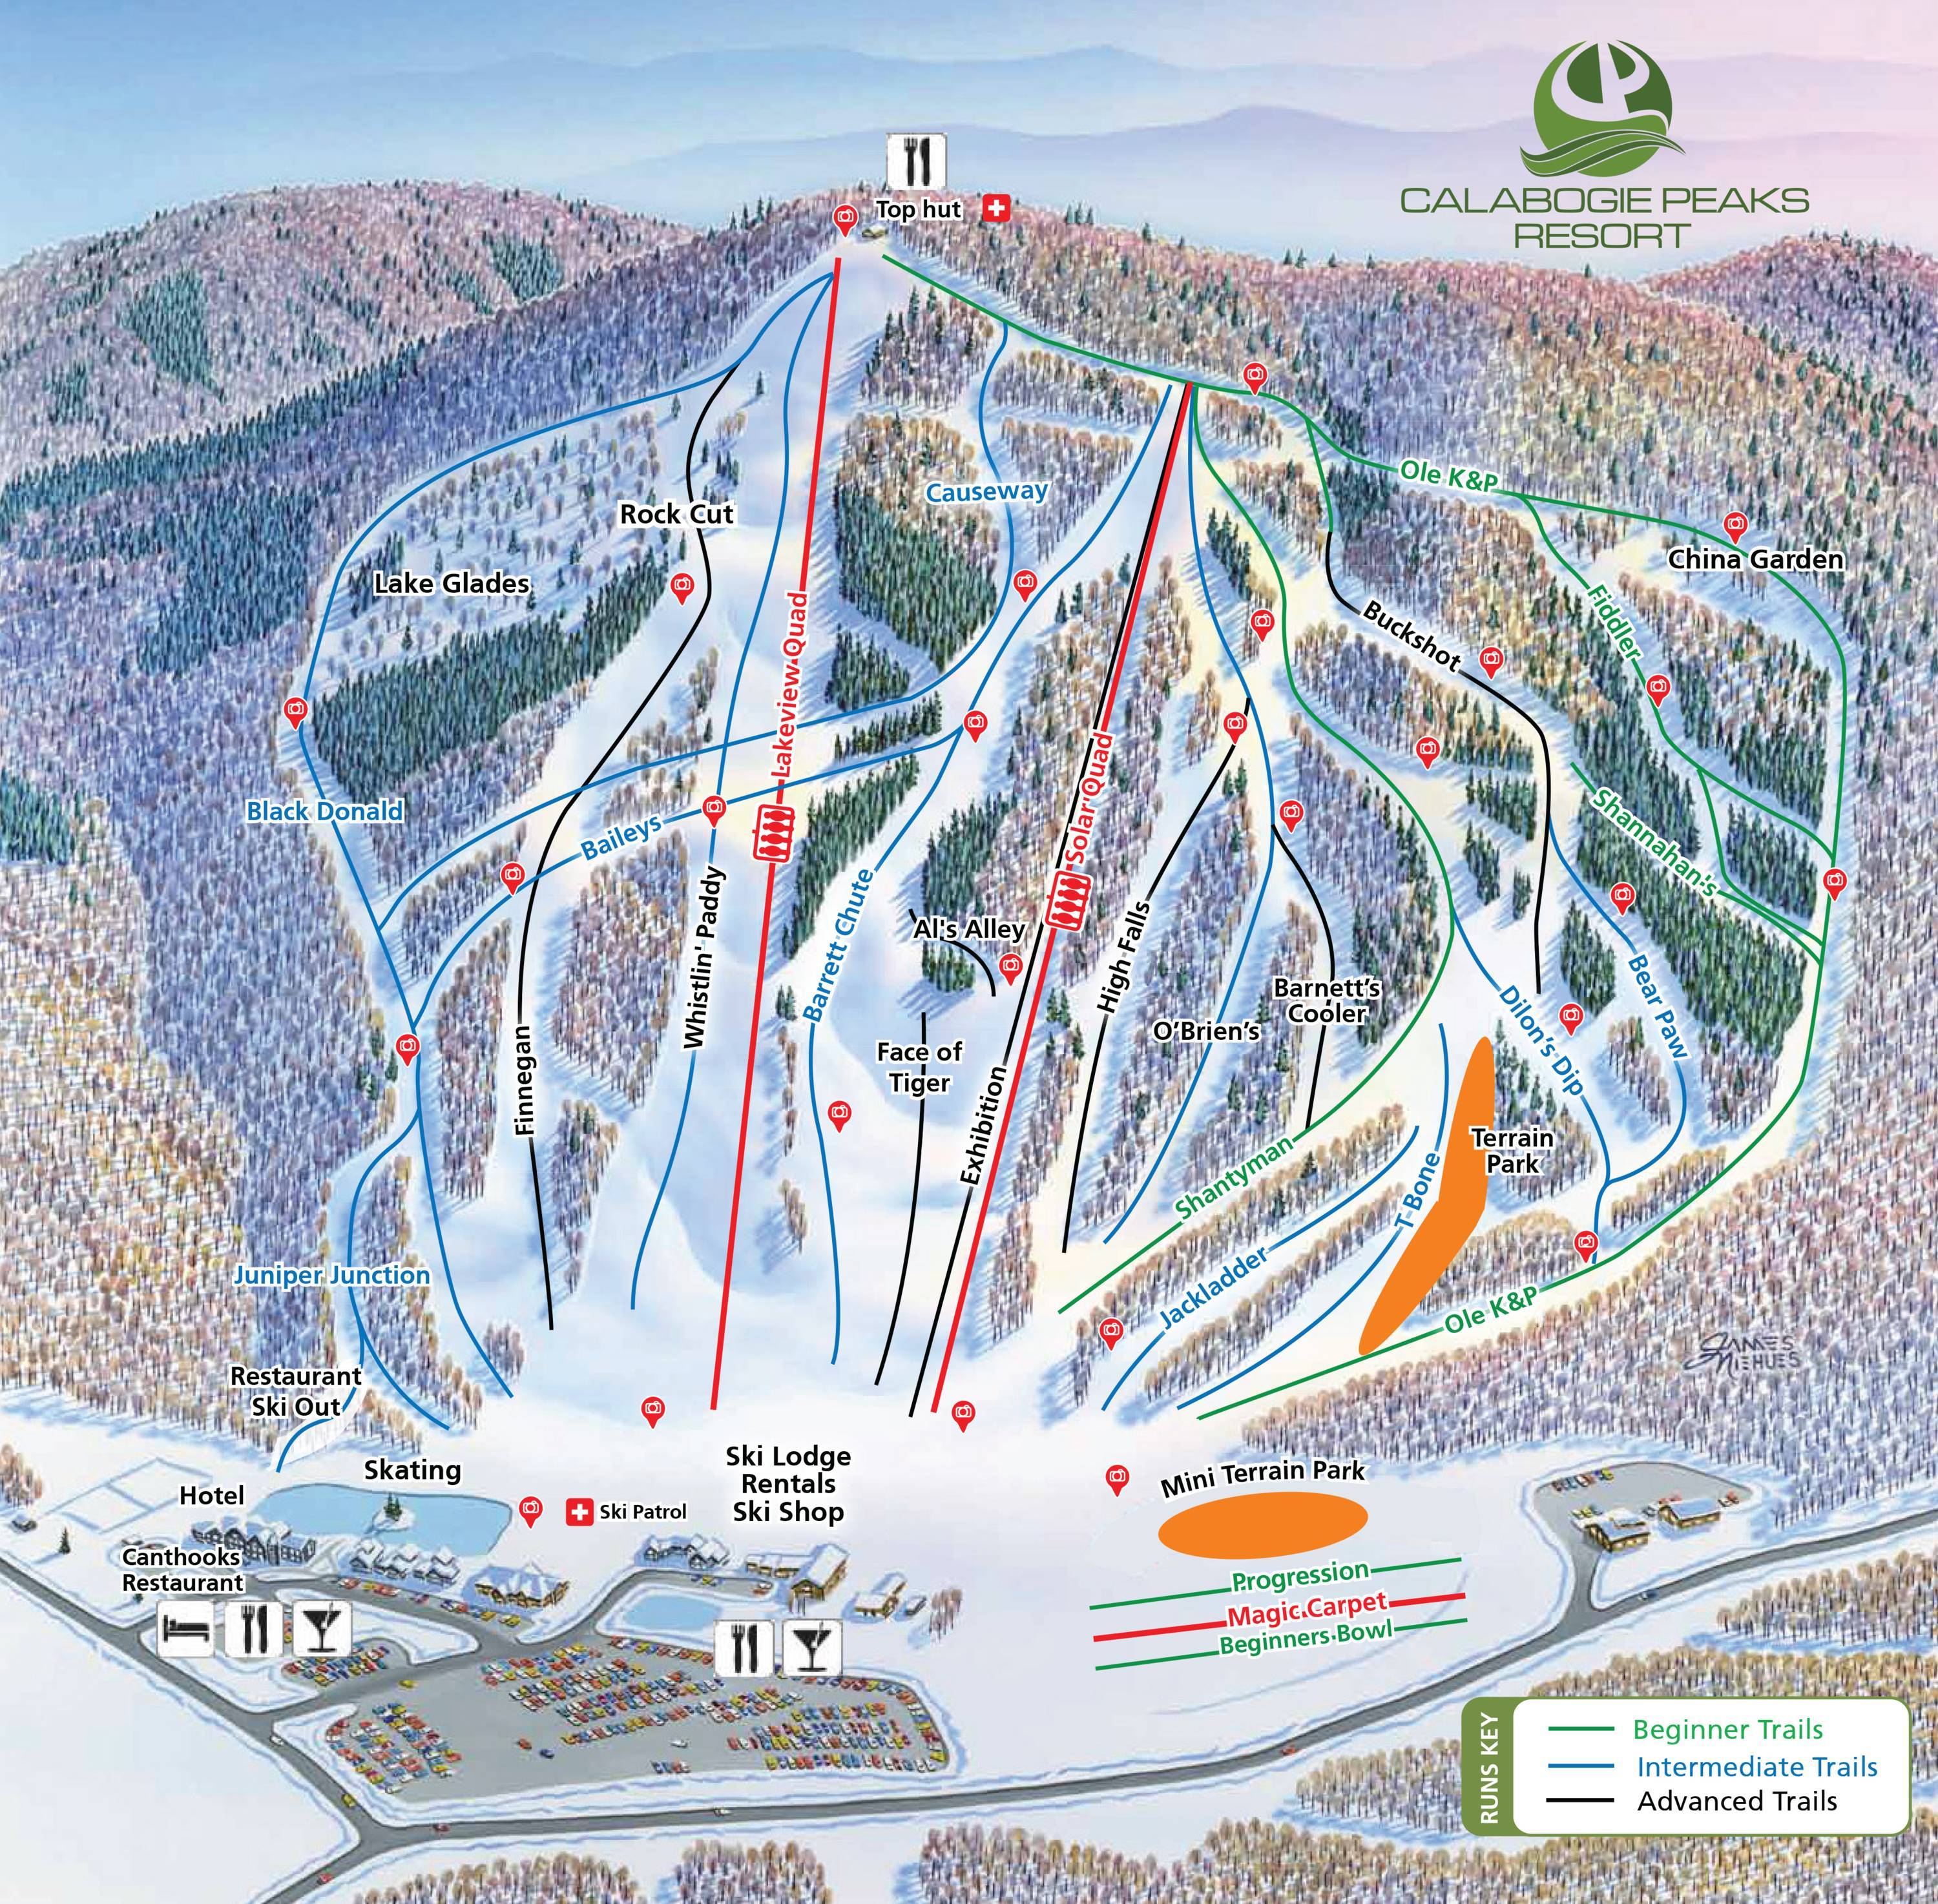 Горнолыжный курорт васта. Эльбрус горнолыжный курорт трассы. Эльбрус лыжные трассы. Схема трасс Эльбрус горнолыжный. Эльбрус горнолыжный курорт схема трасс.